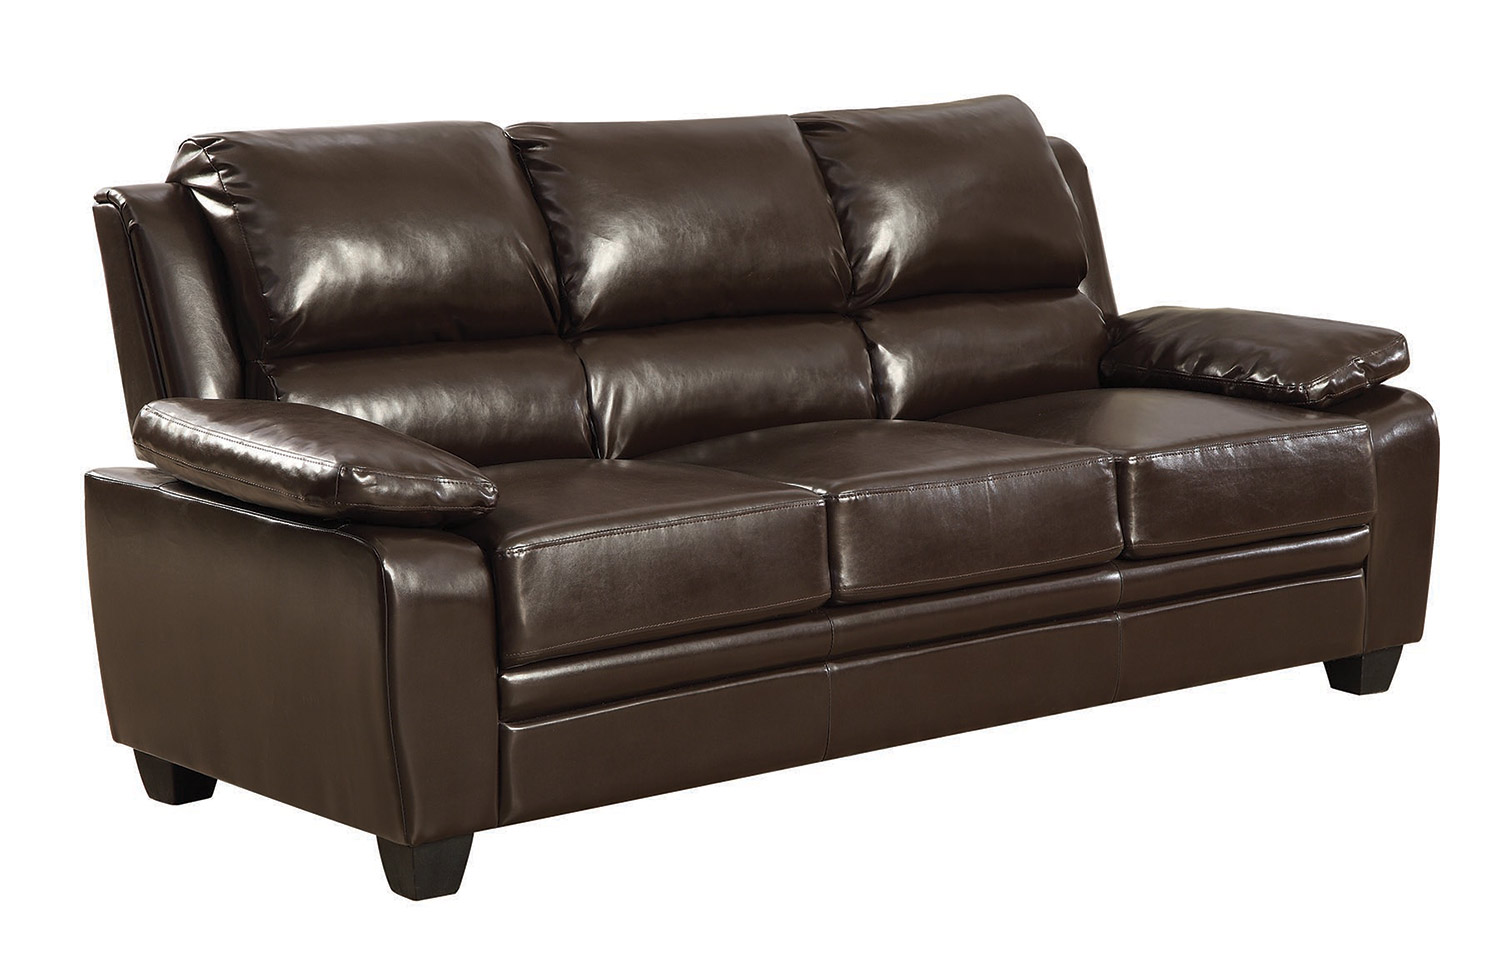 Coaster Gryffin Sofa - Dark brown